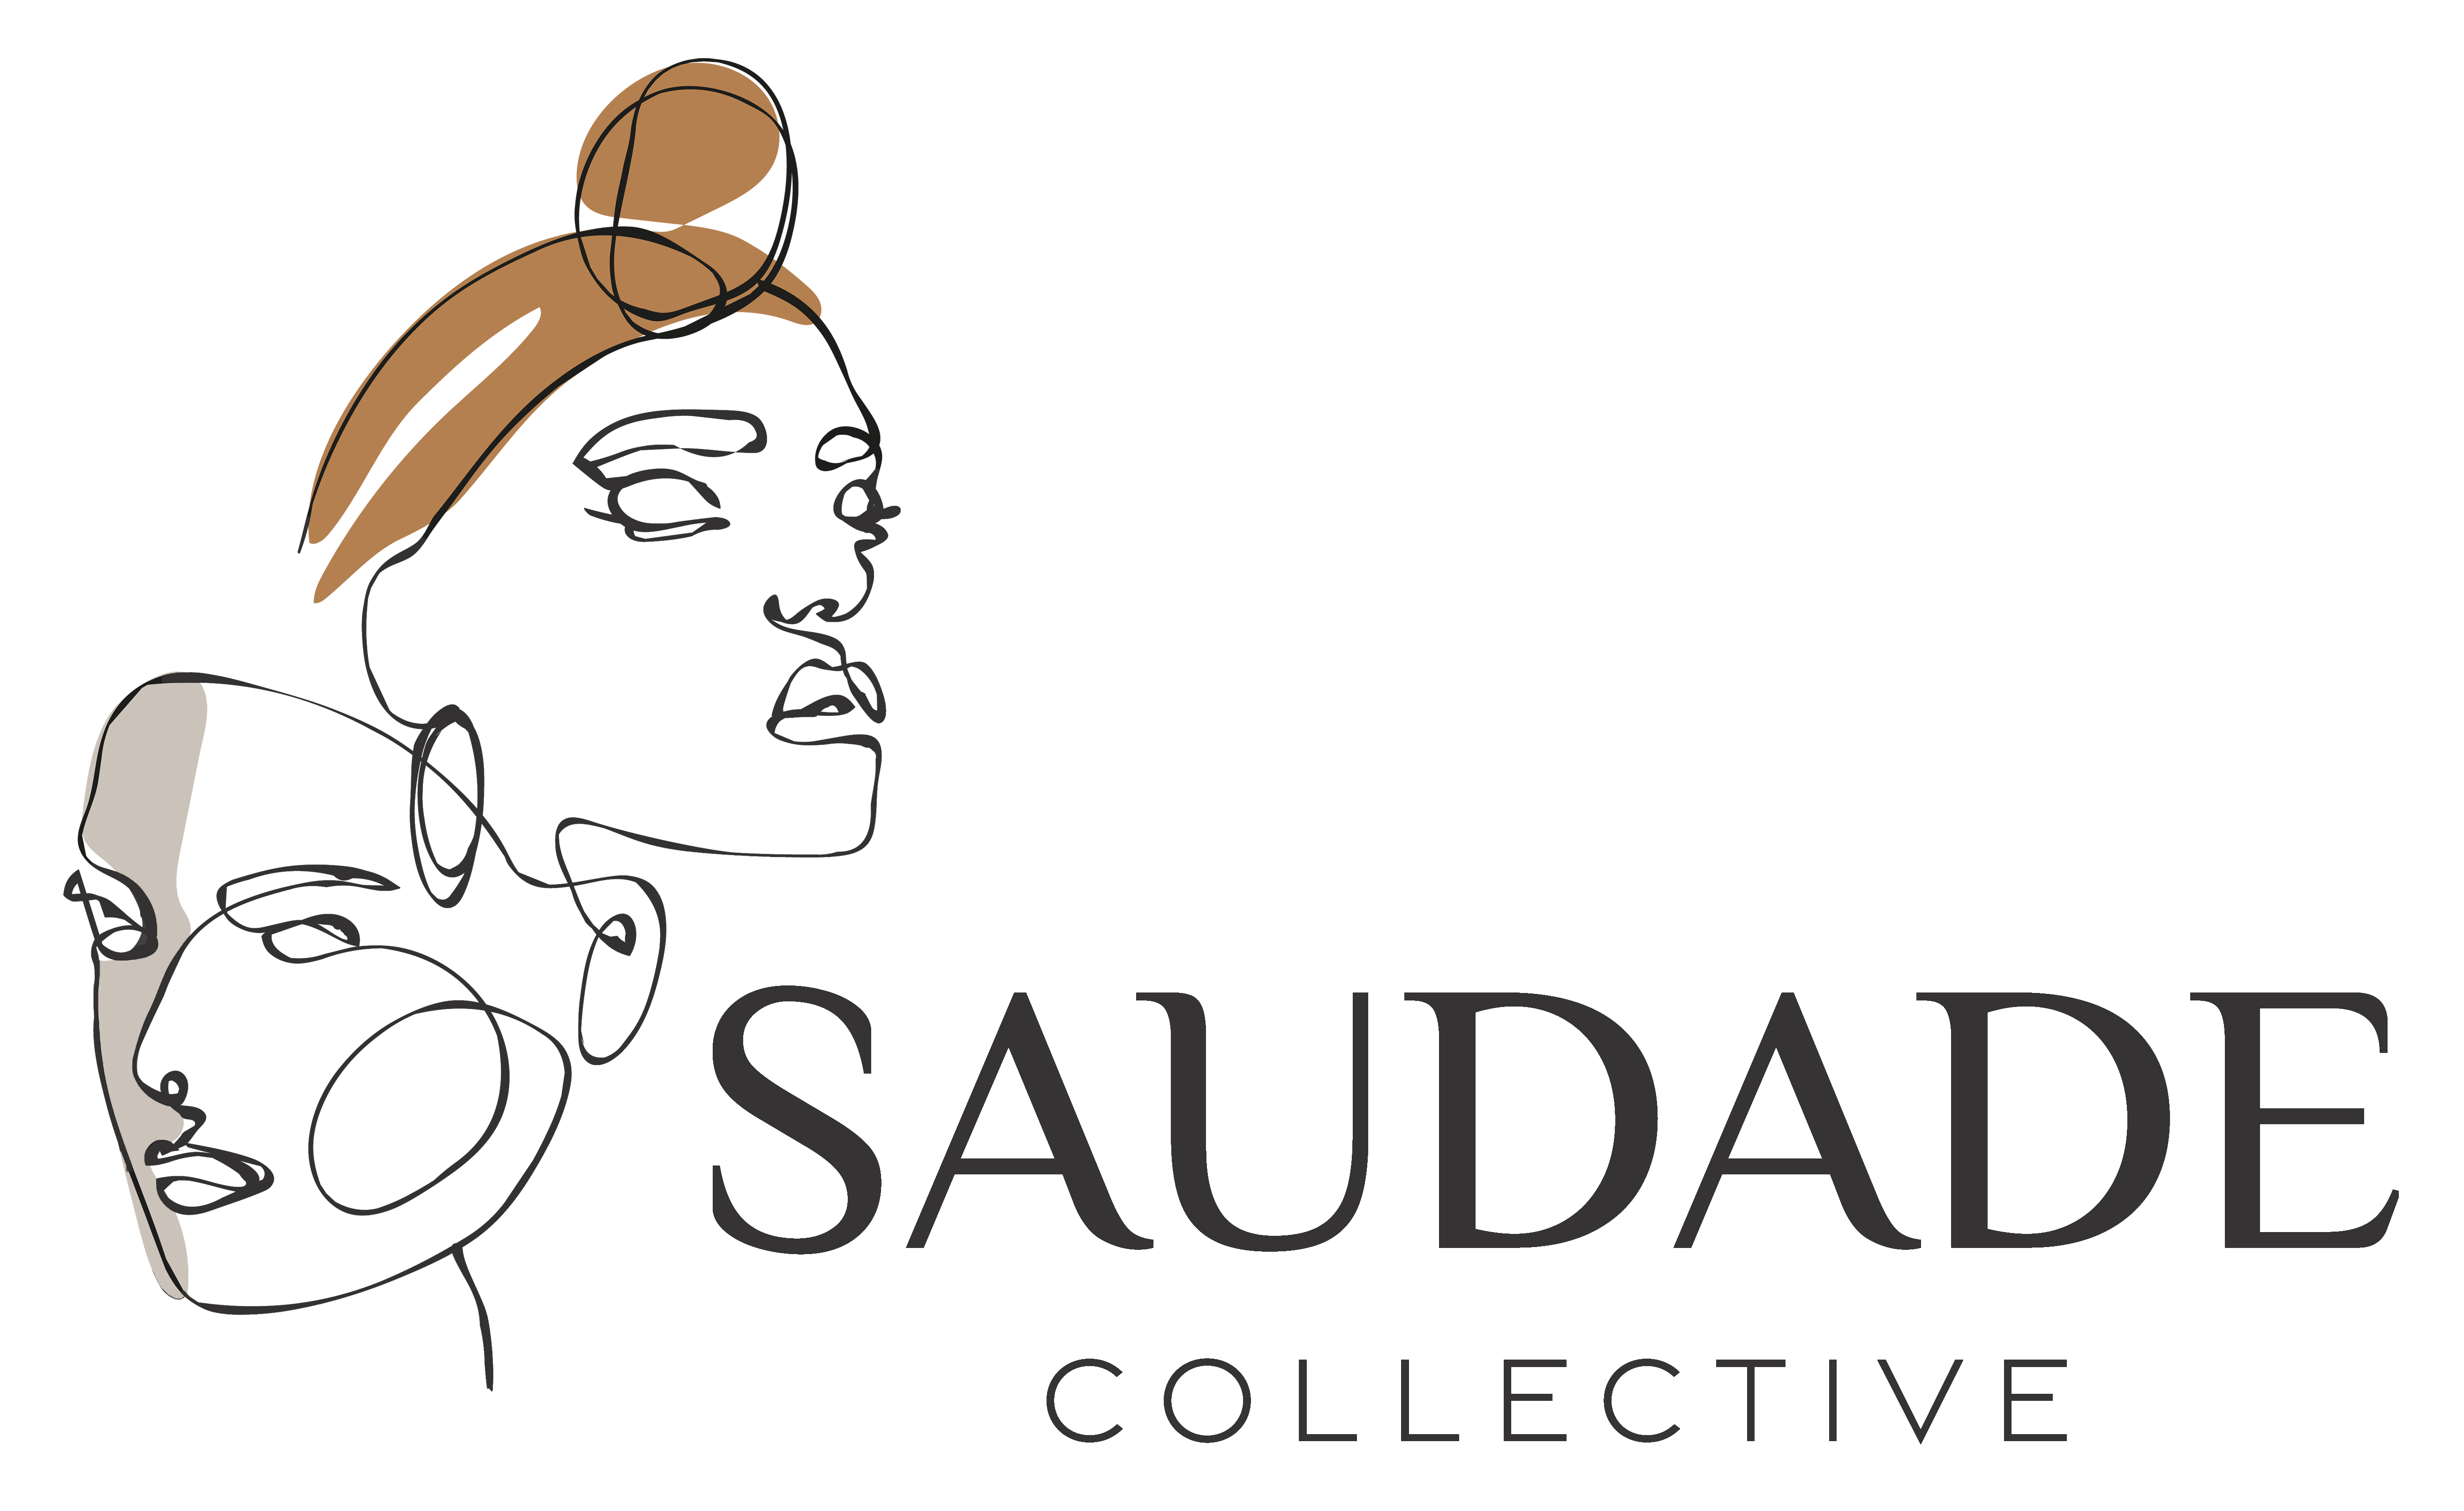 #saudade #saudadecollective #saudade_collective #collective #craftsmanship